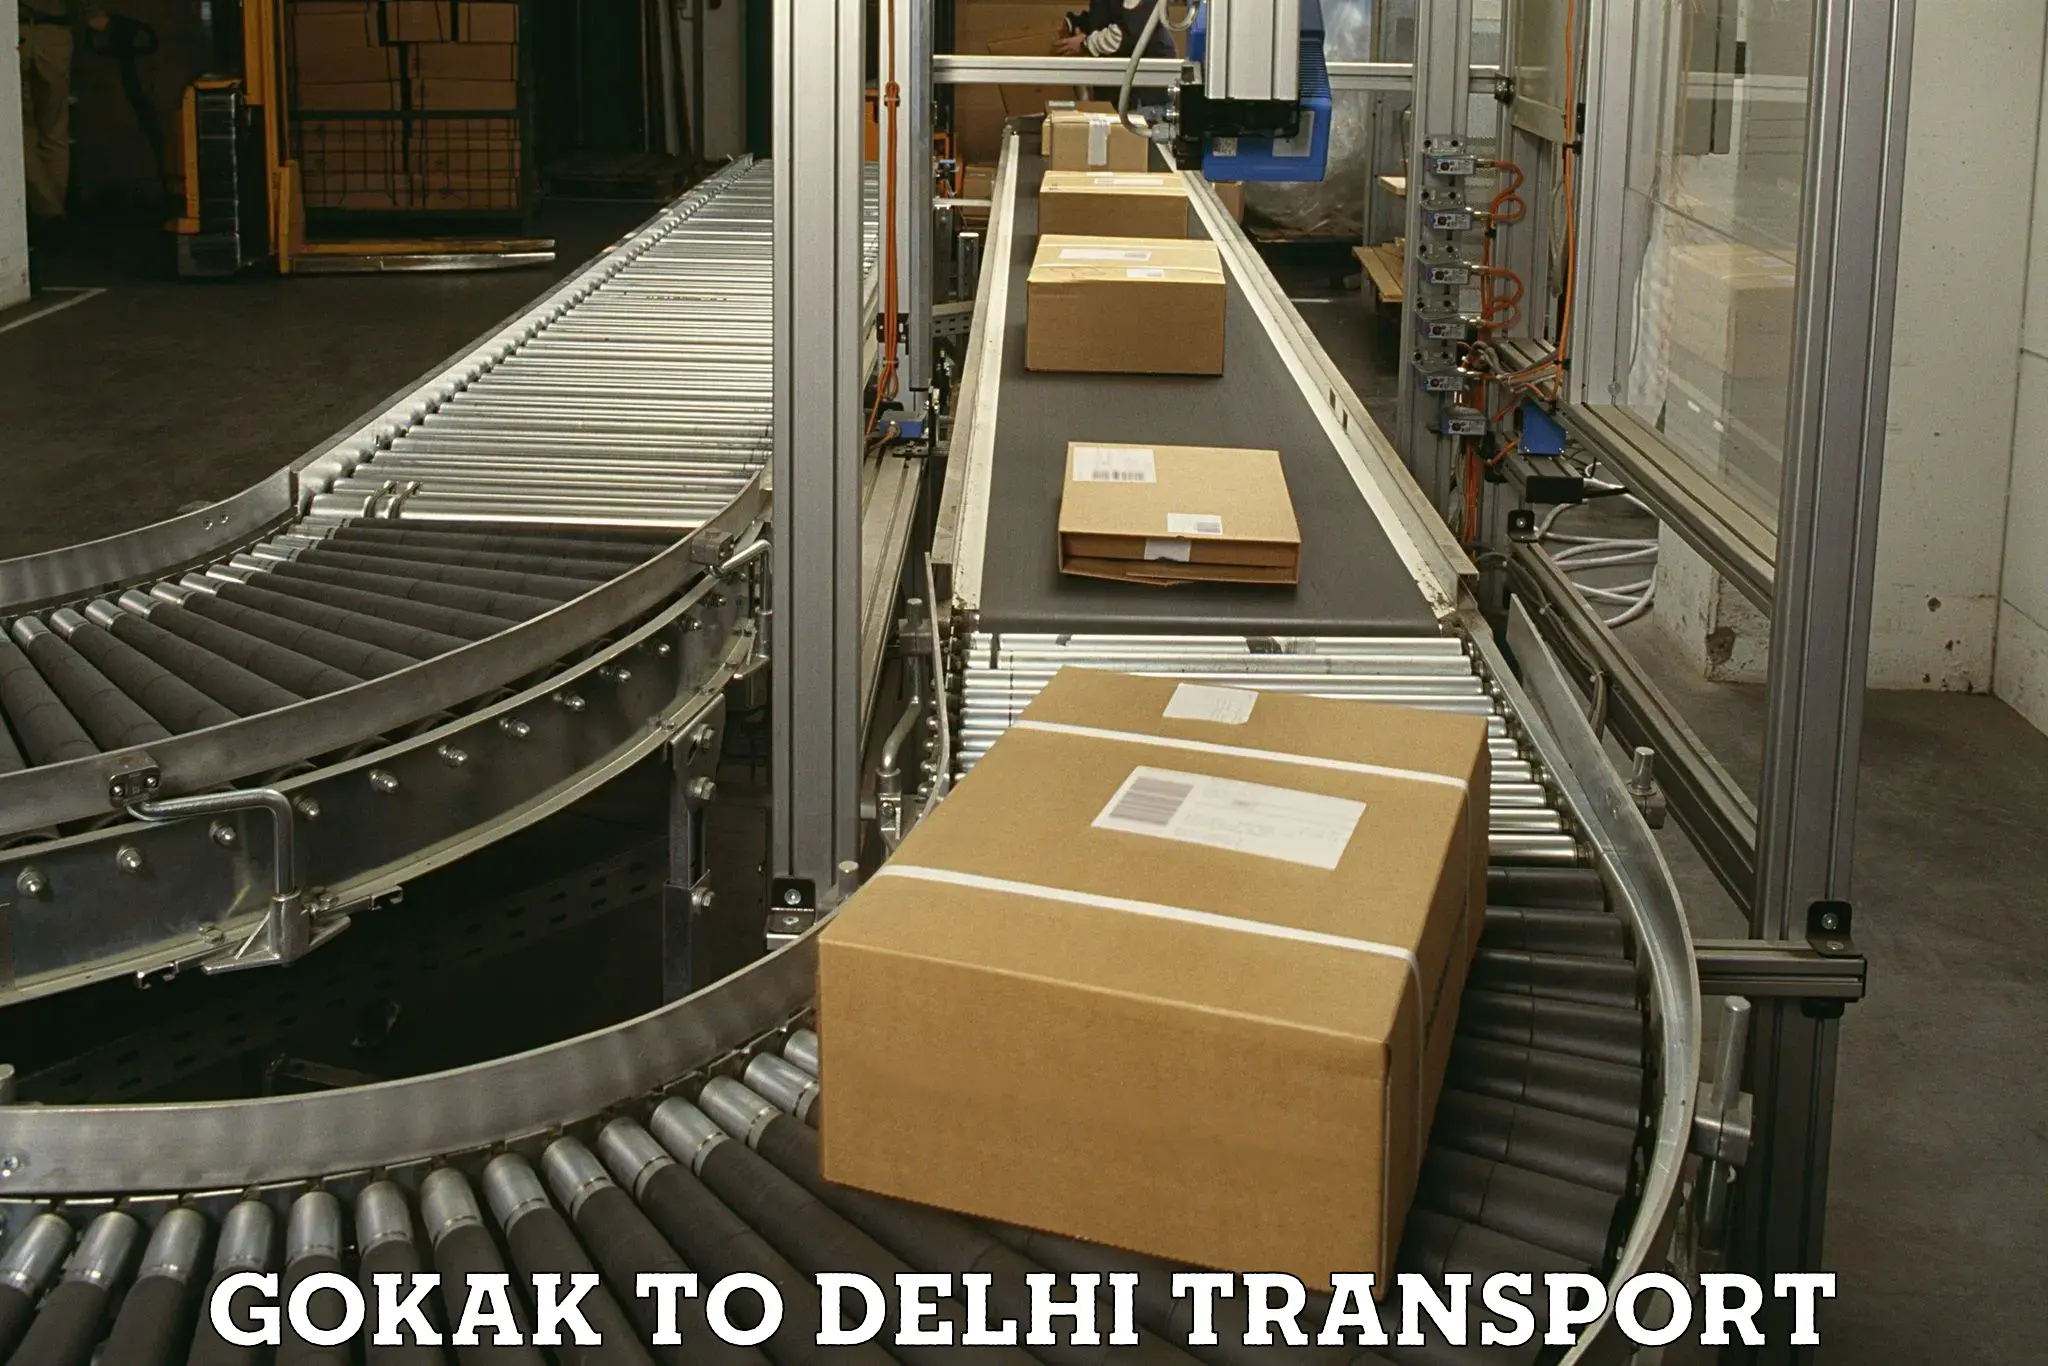 Furniture transport service Gokak to NCR